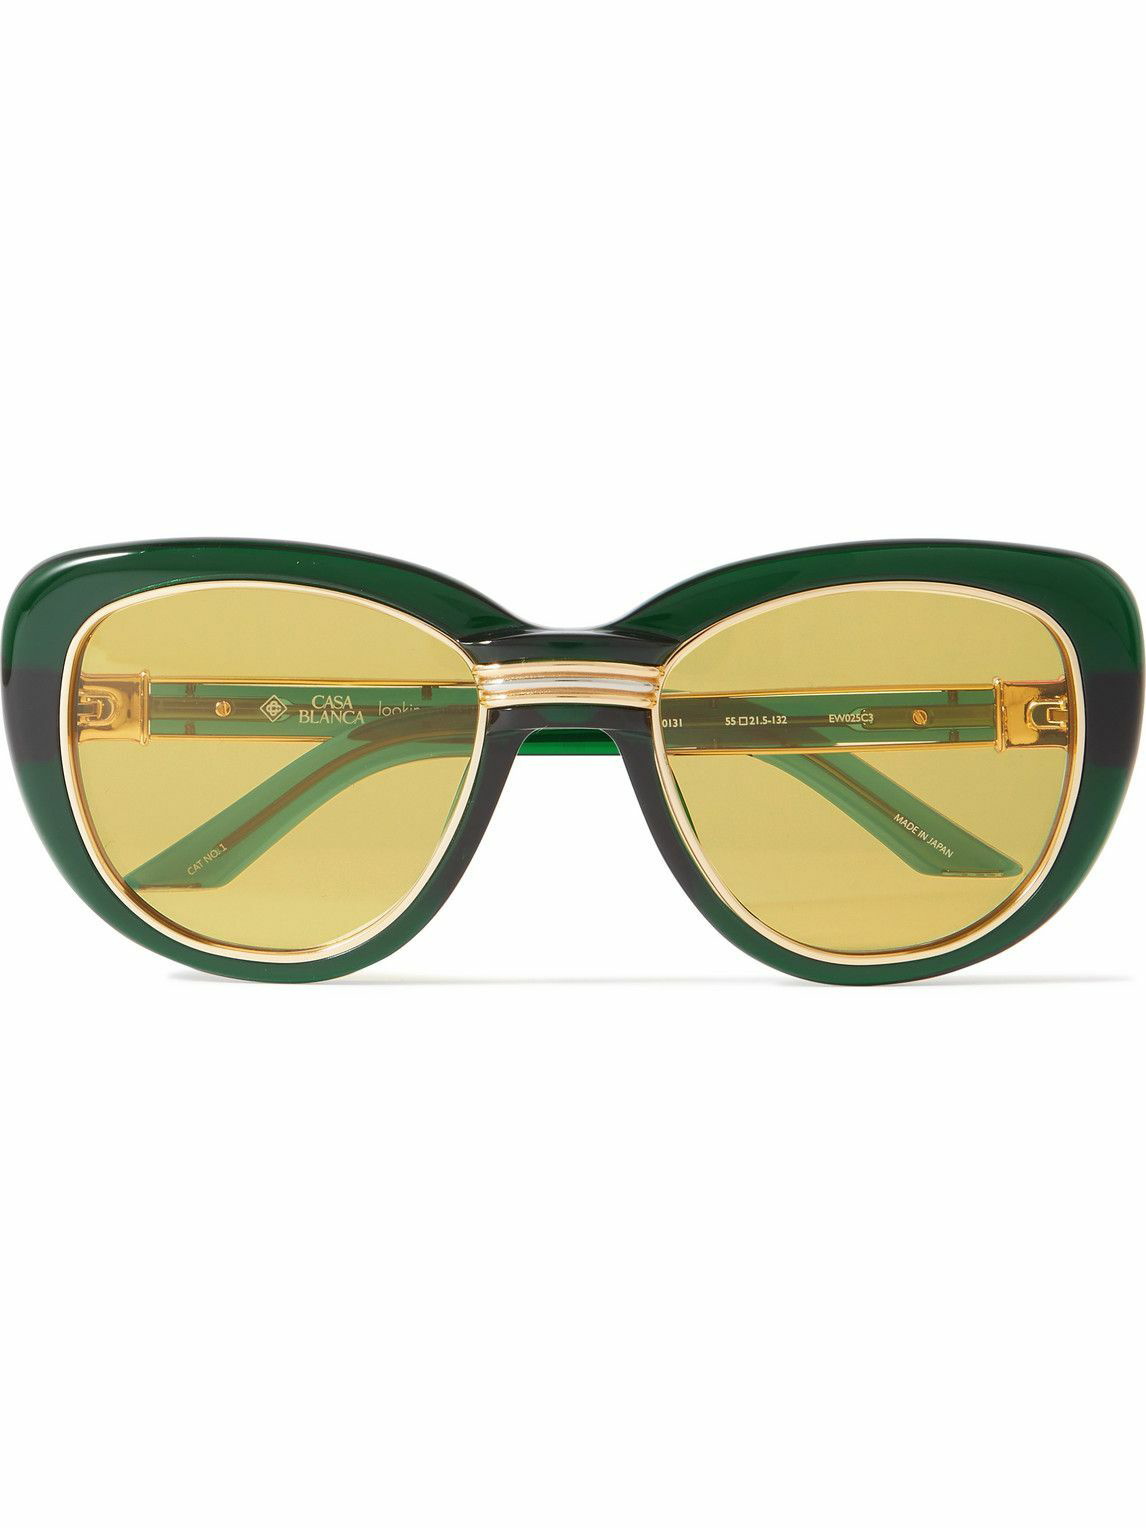 Oversized cat-eye tortoiseshell acetate and gold-tone optical glasses